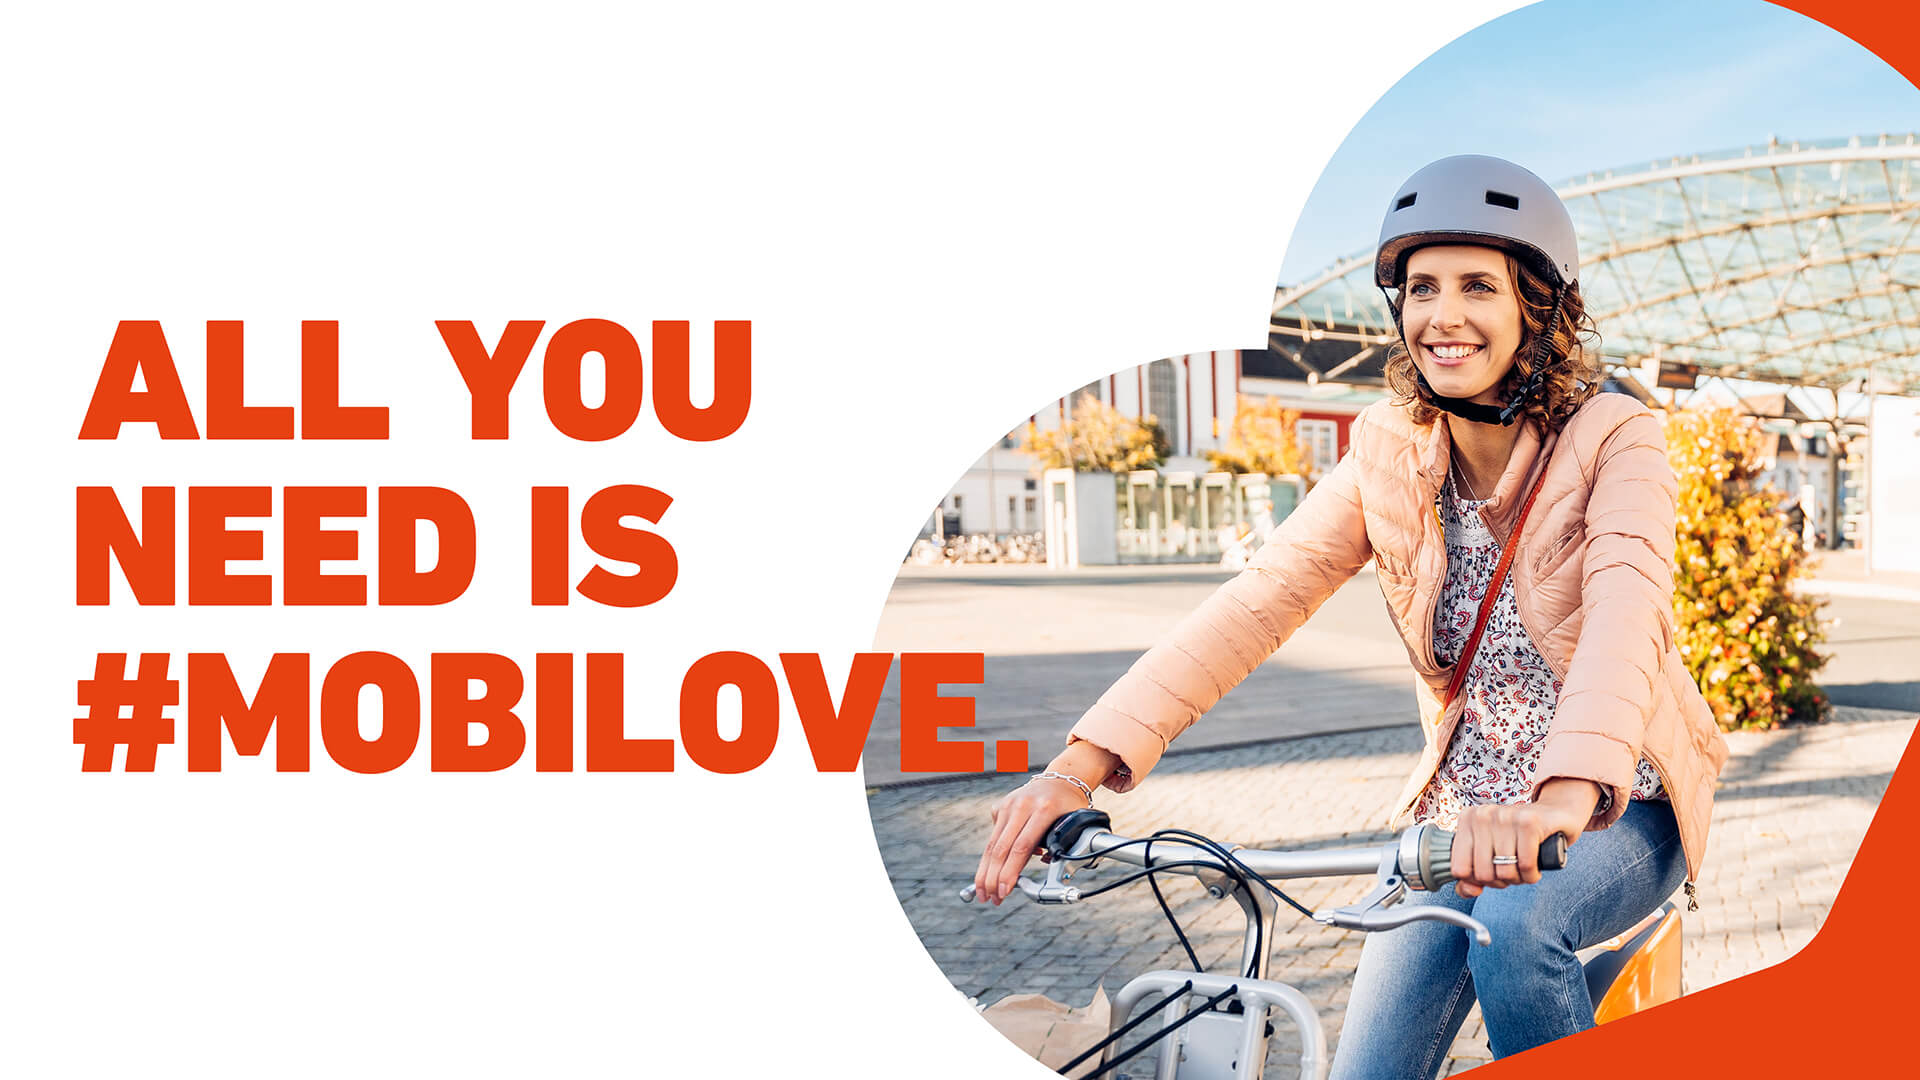 Mobilove-Kampagnenmotiv: Frau fährt lächelnd auf einem Rad